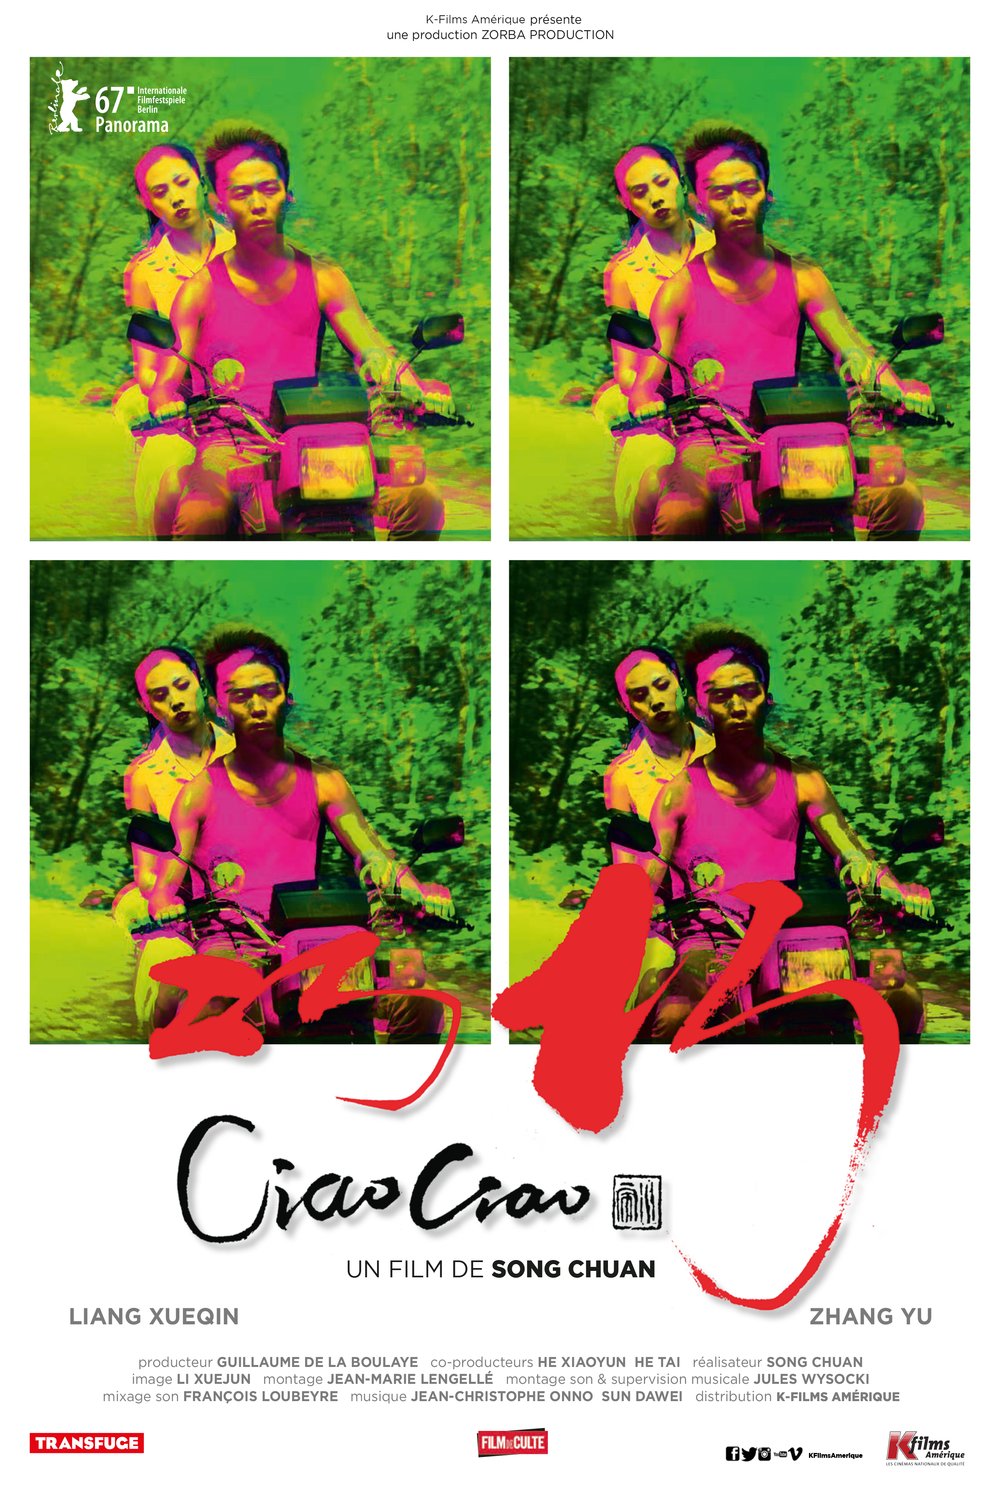 L'affiche du film Ciao Ciao